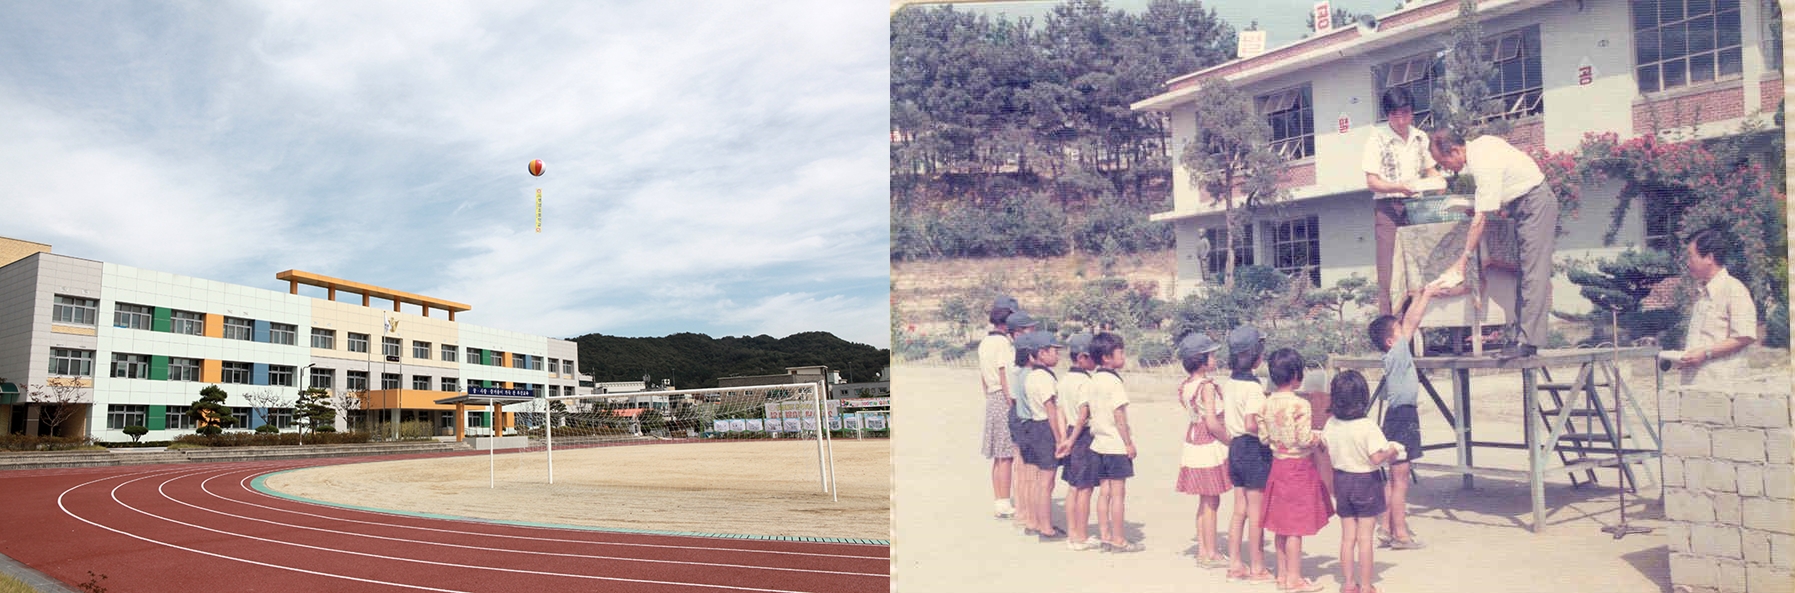 올해 개교 100주년을 맞은 세종시 부강초등학교. 왼쪽이 현재 모습, 오른쪽이 1970년대 초 아침 조회 풍경이다.